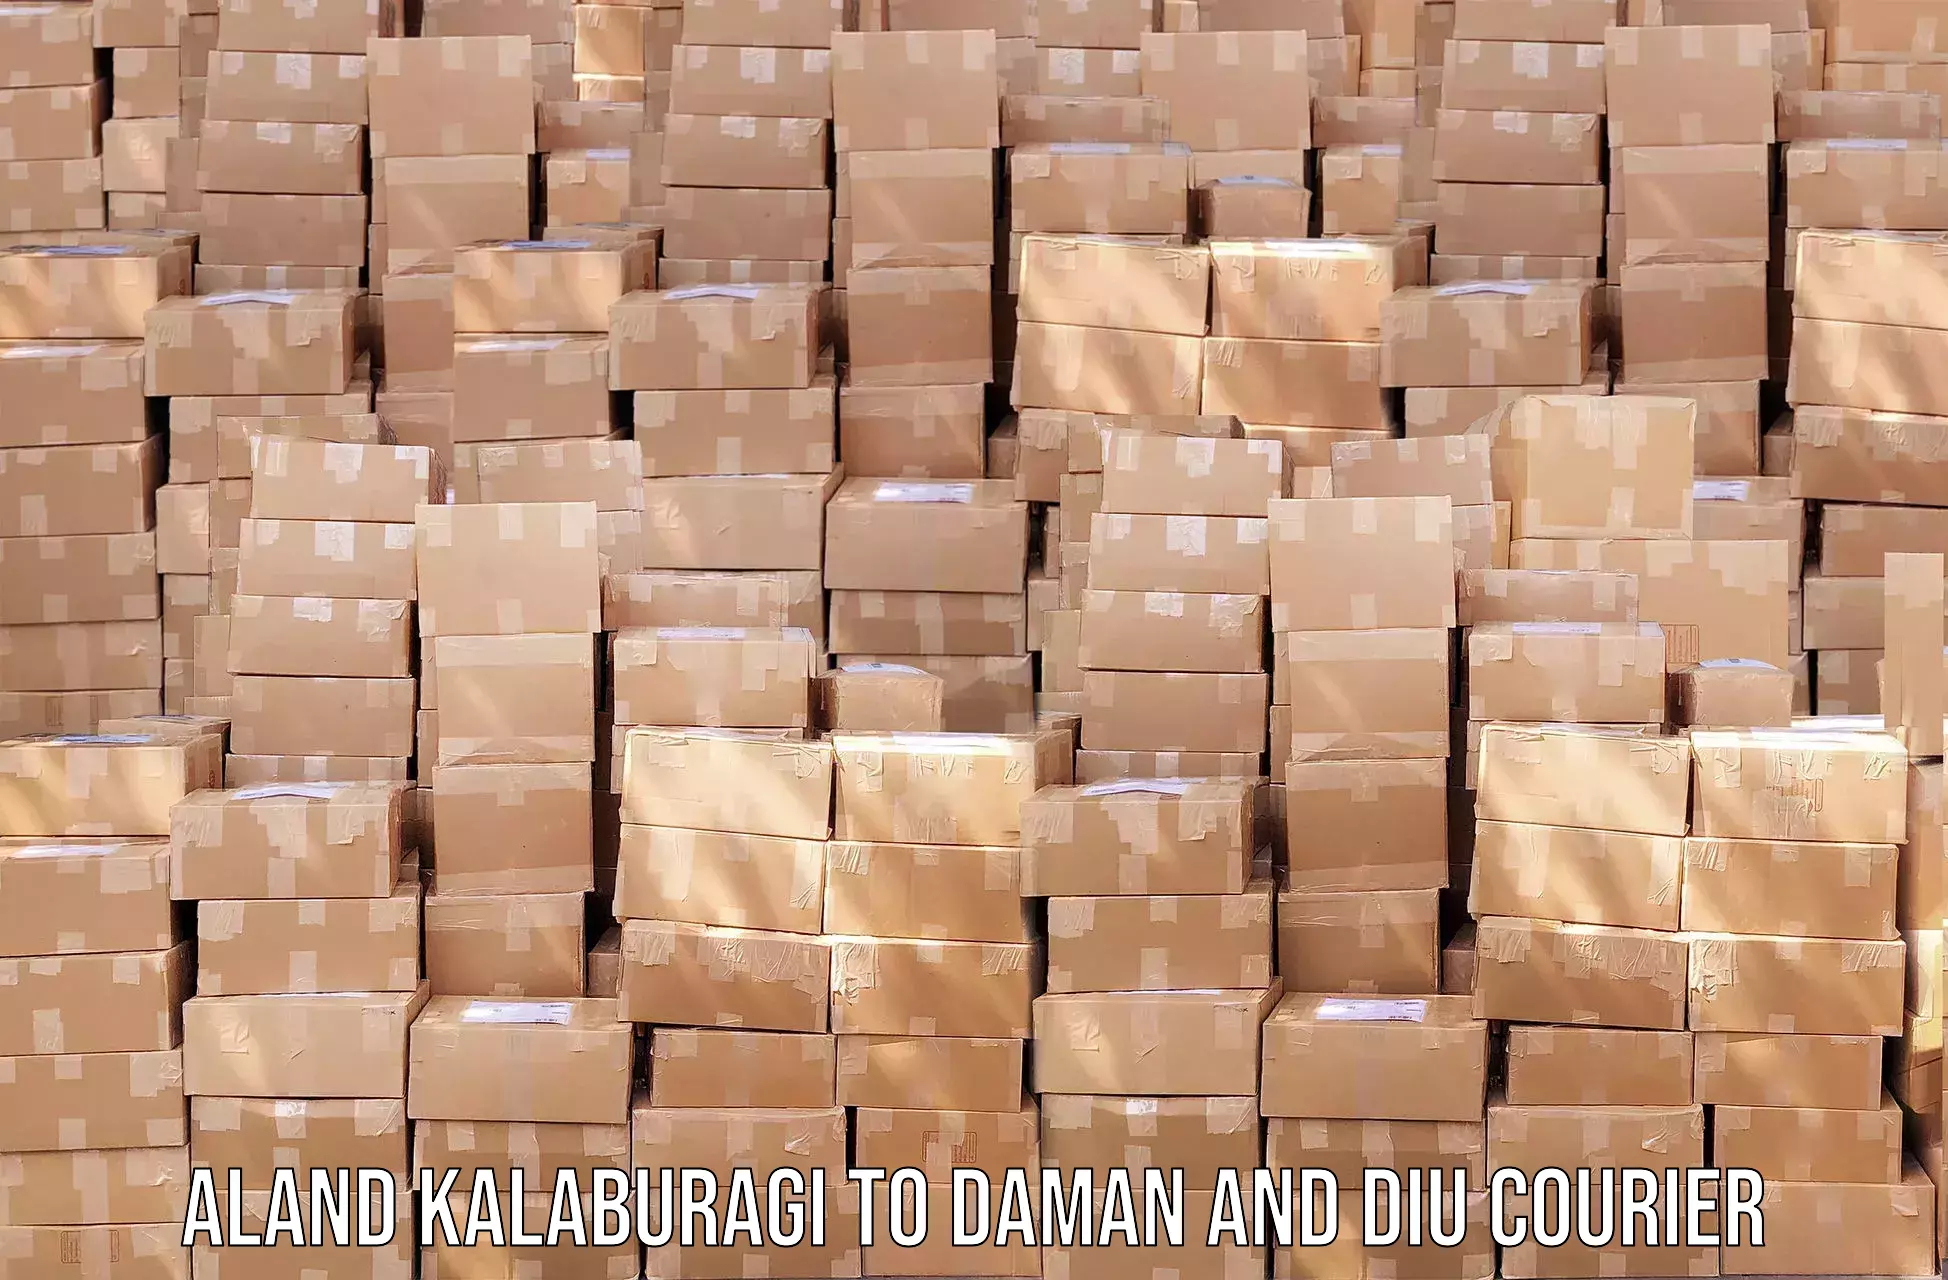 High-capacity parcel service Aland Kalaburagi to Diu